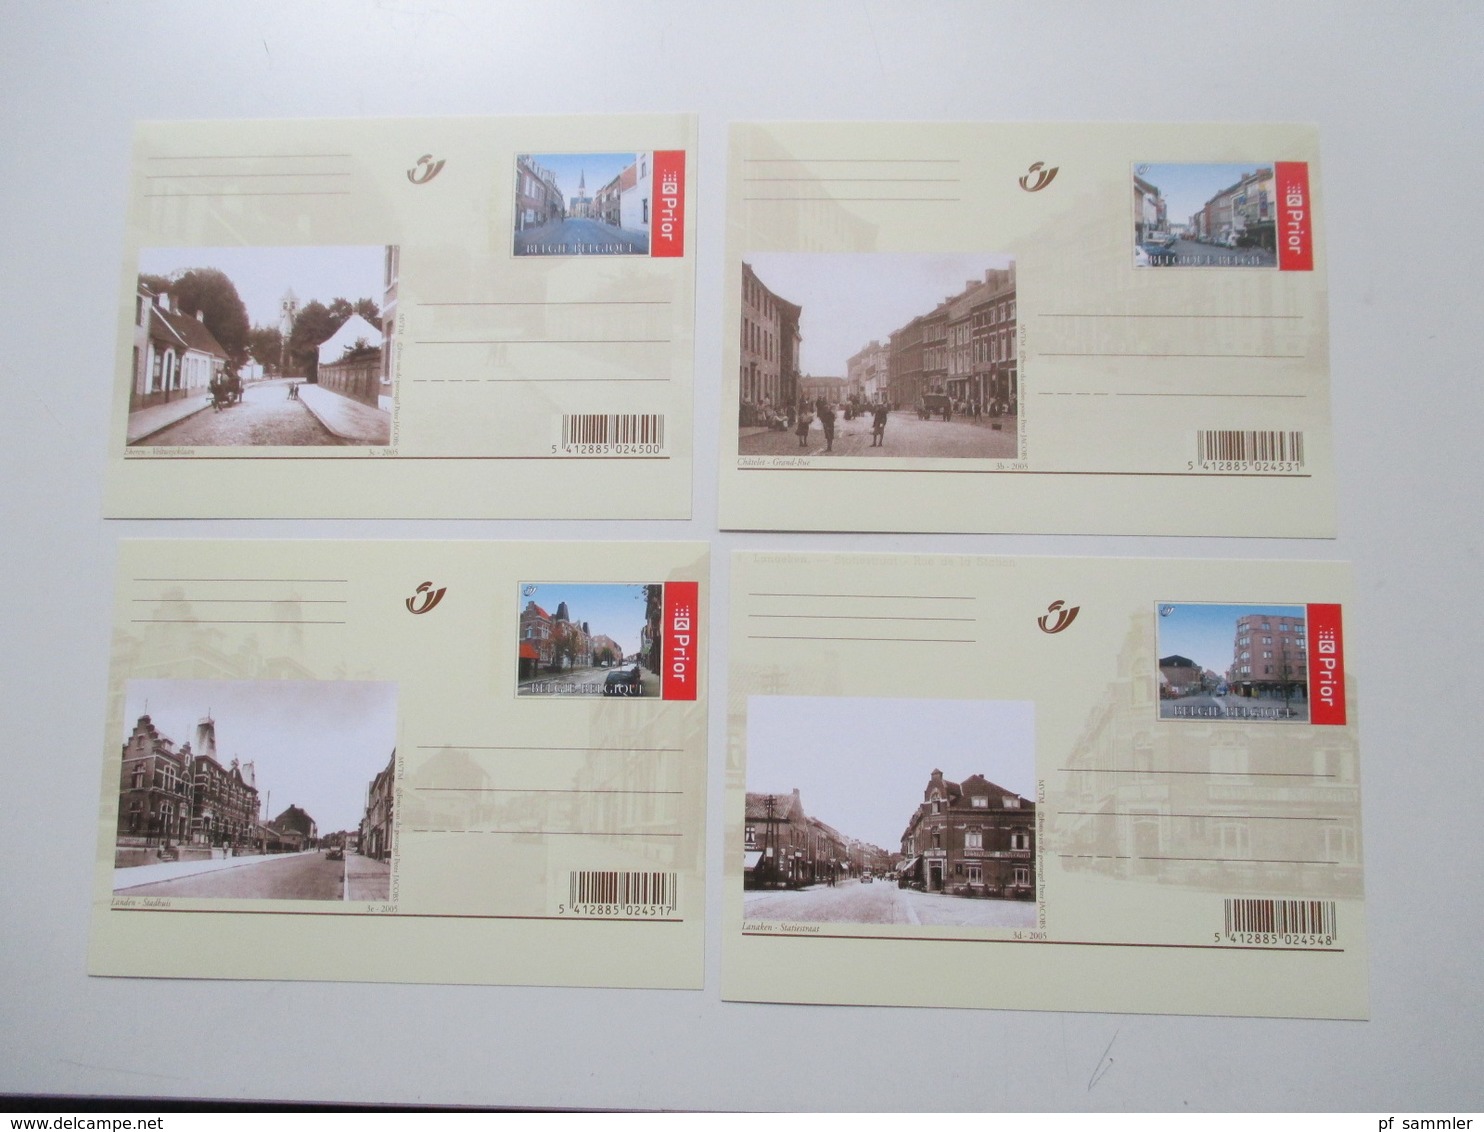 Belgien Posten GA Karten / Umschläge ca. 1975  - 2005 insgesamt 210 Stück ungebraucht und z.T. gelaufen! Lagerposten